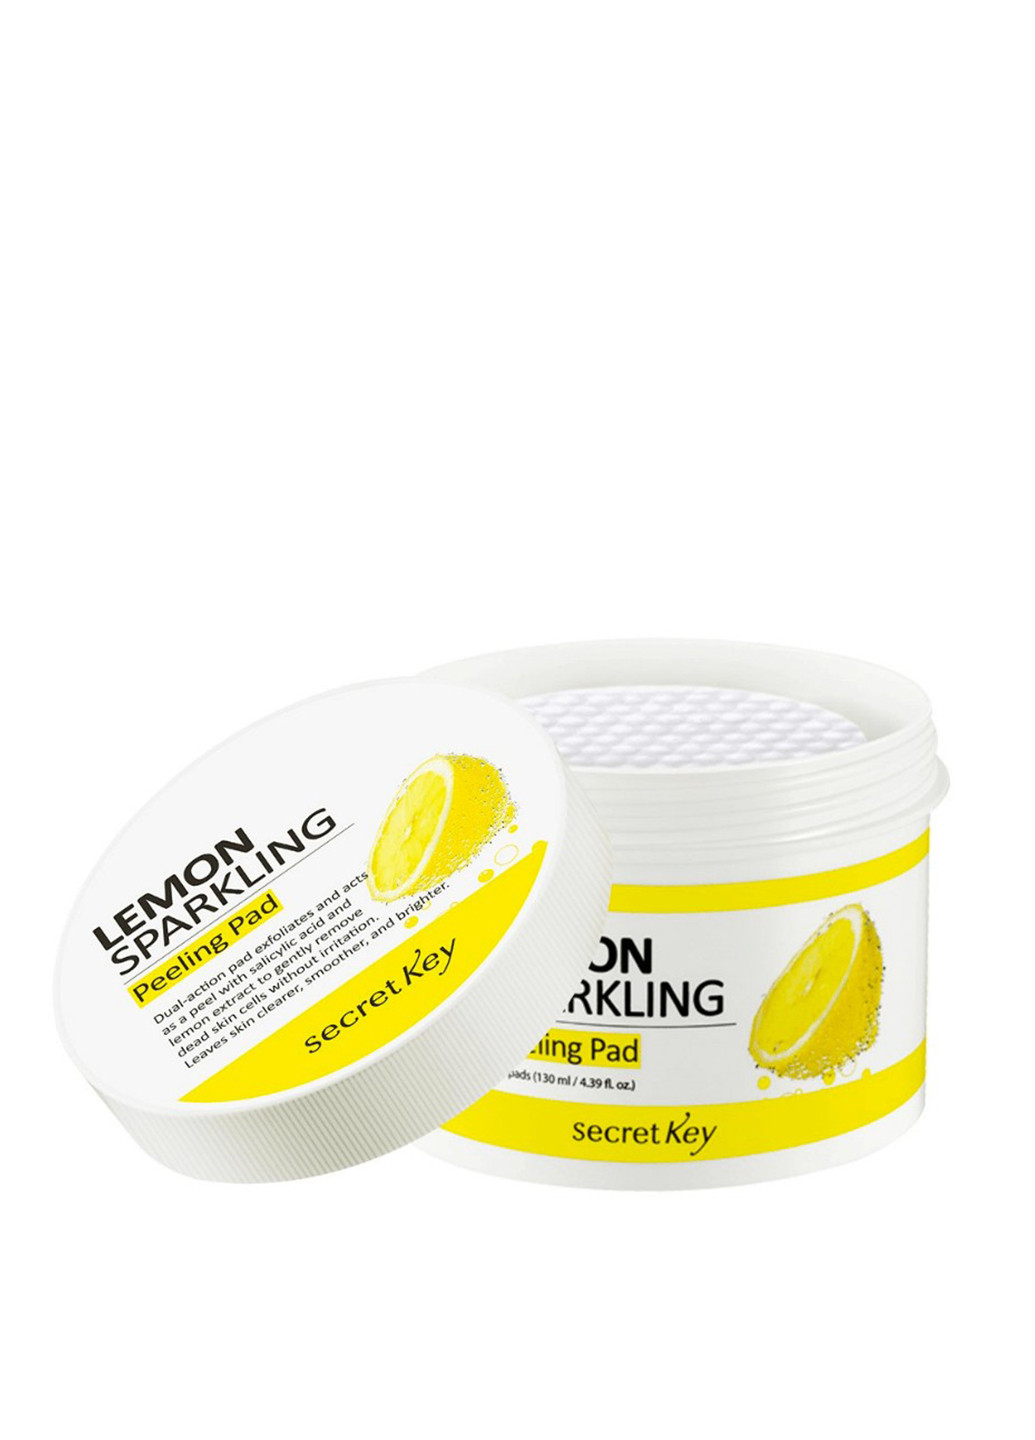 Пилинг-диски с экстрактом лимона Lemon Sparkling Peeling Pad, 70 шт Secret Key (184326284)